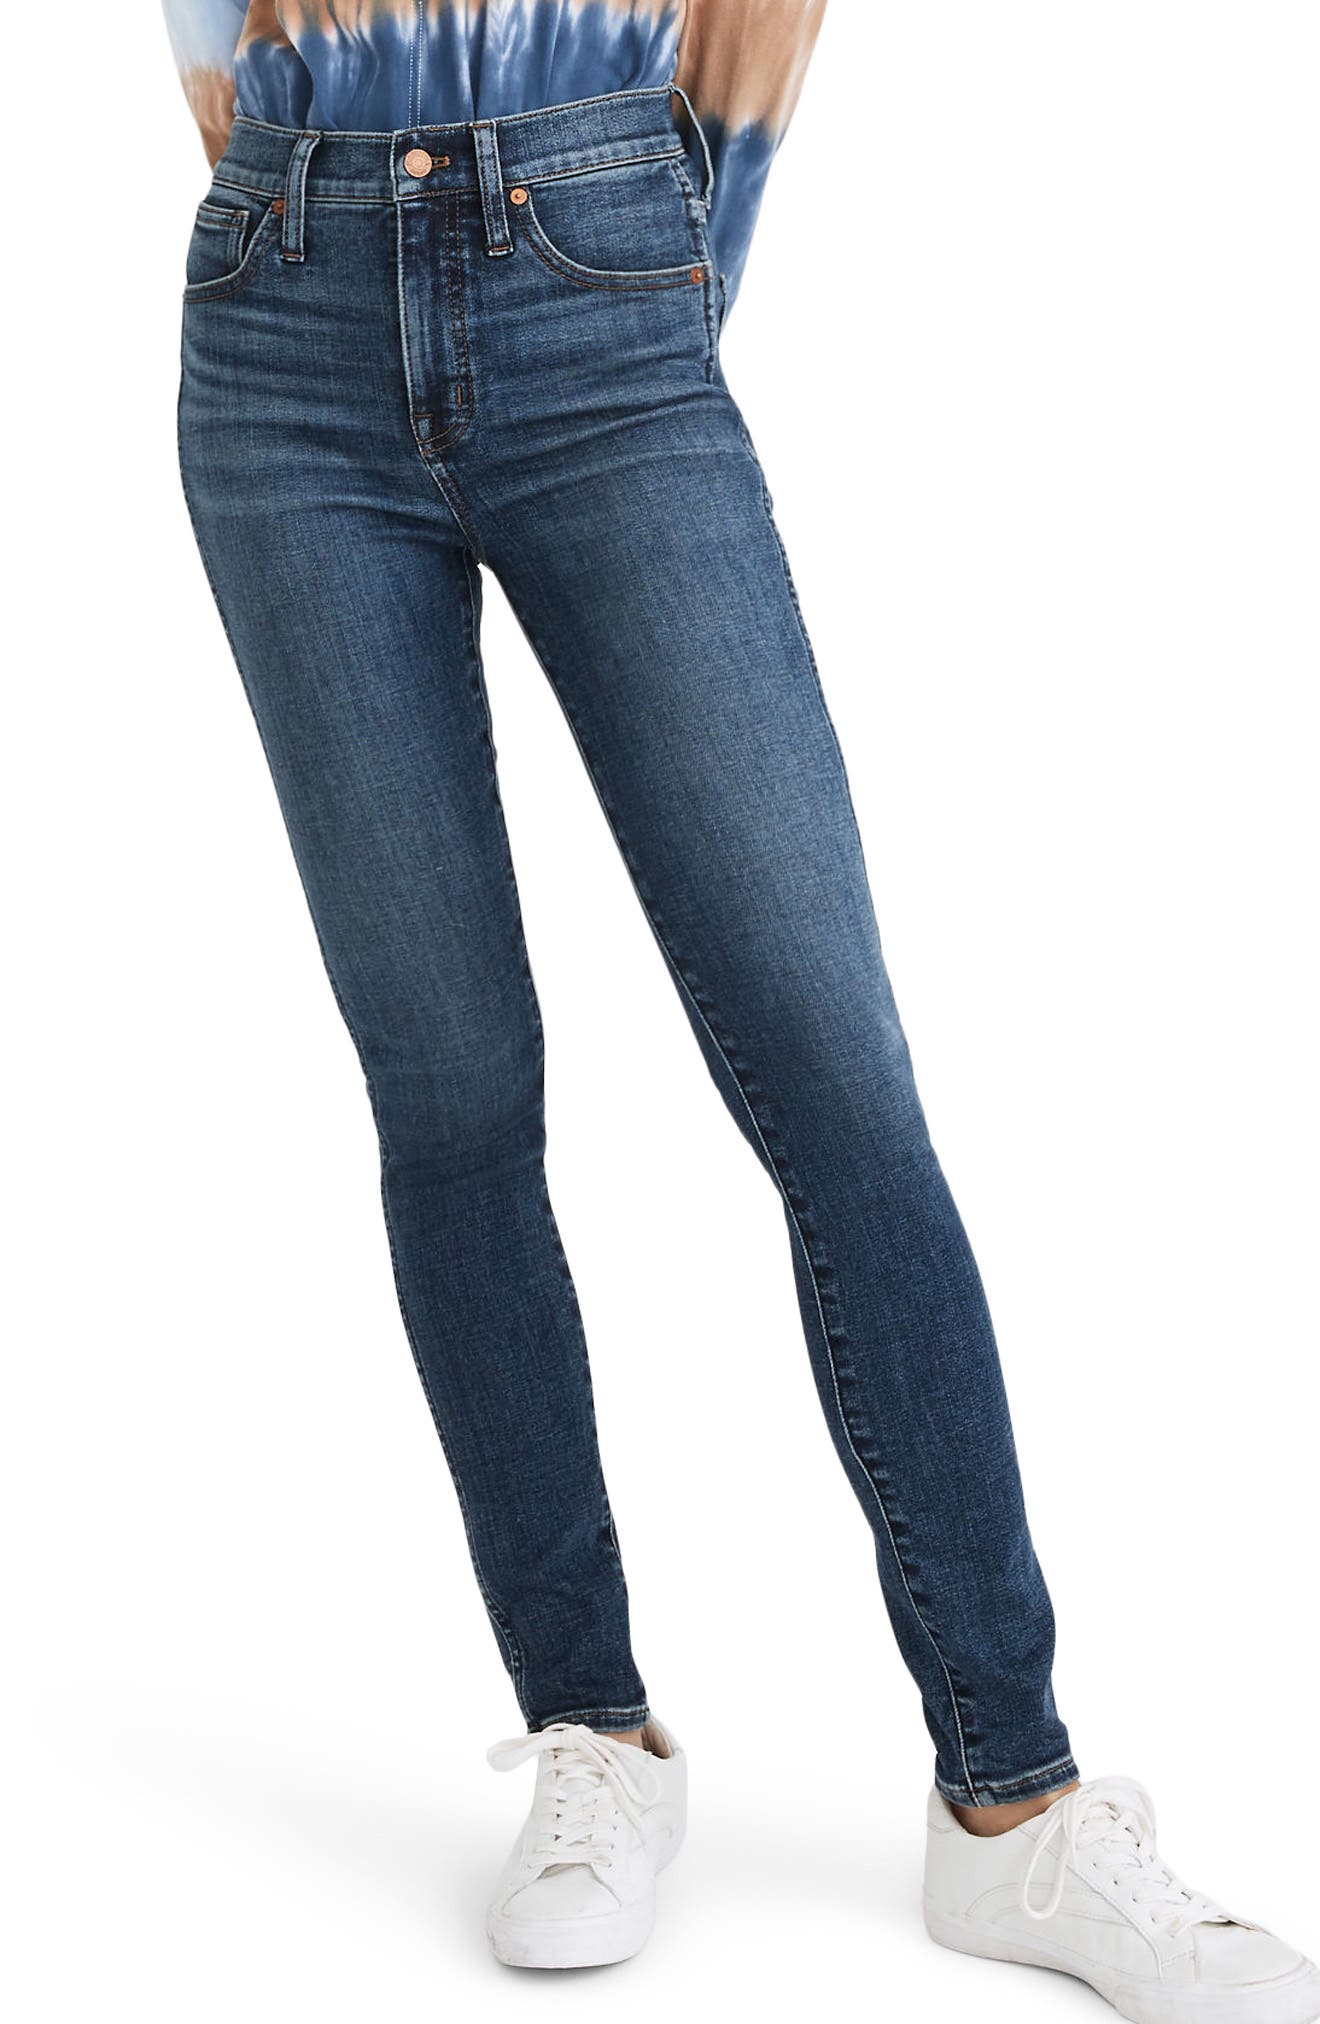 skinny jeans nordstrom